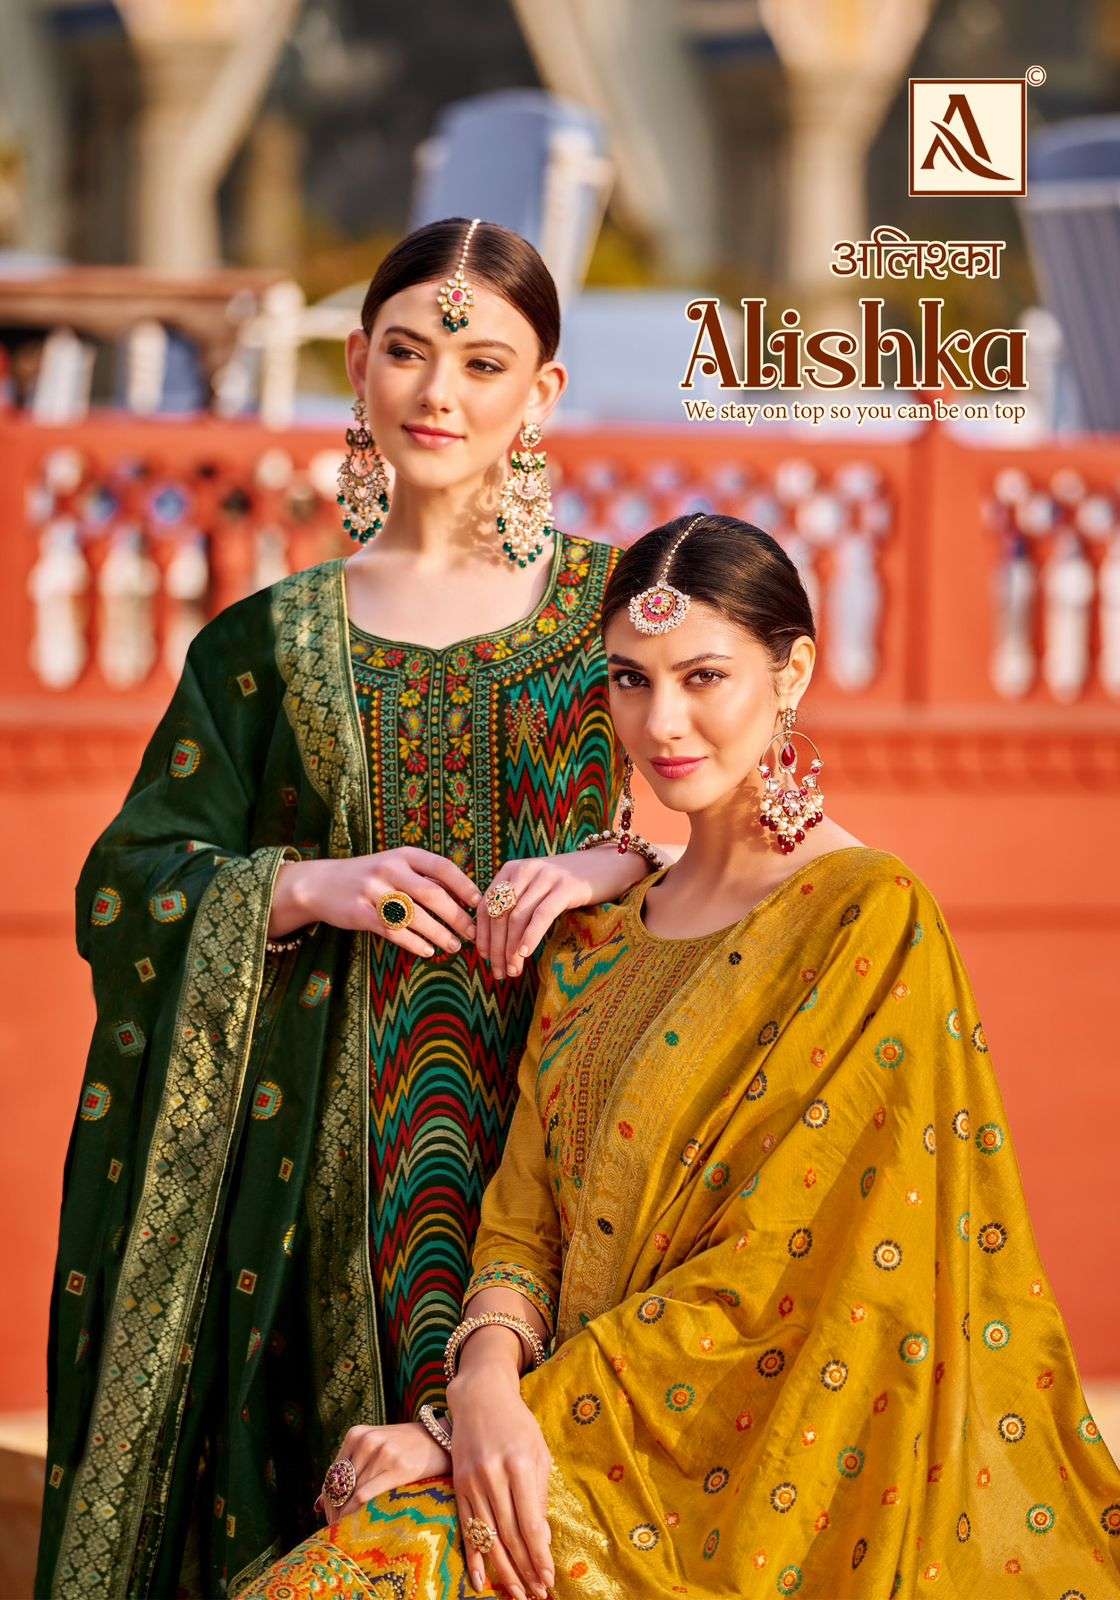 Alok Suit Alishka Premium Designs Ladies Suit Catalog Suppliers